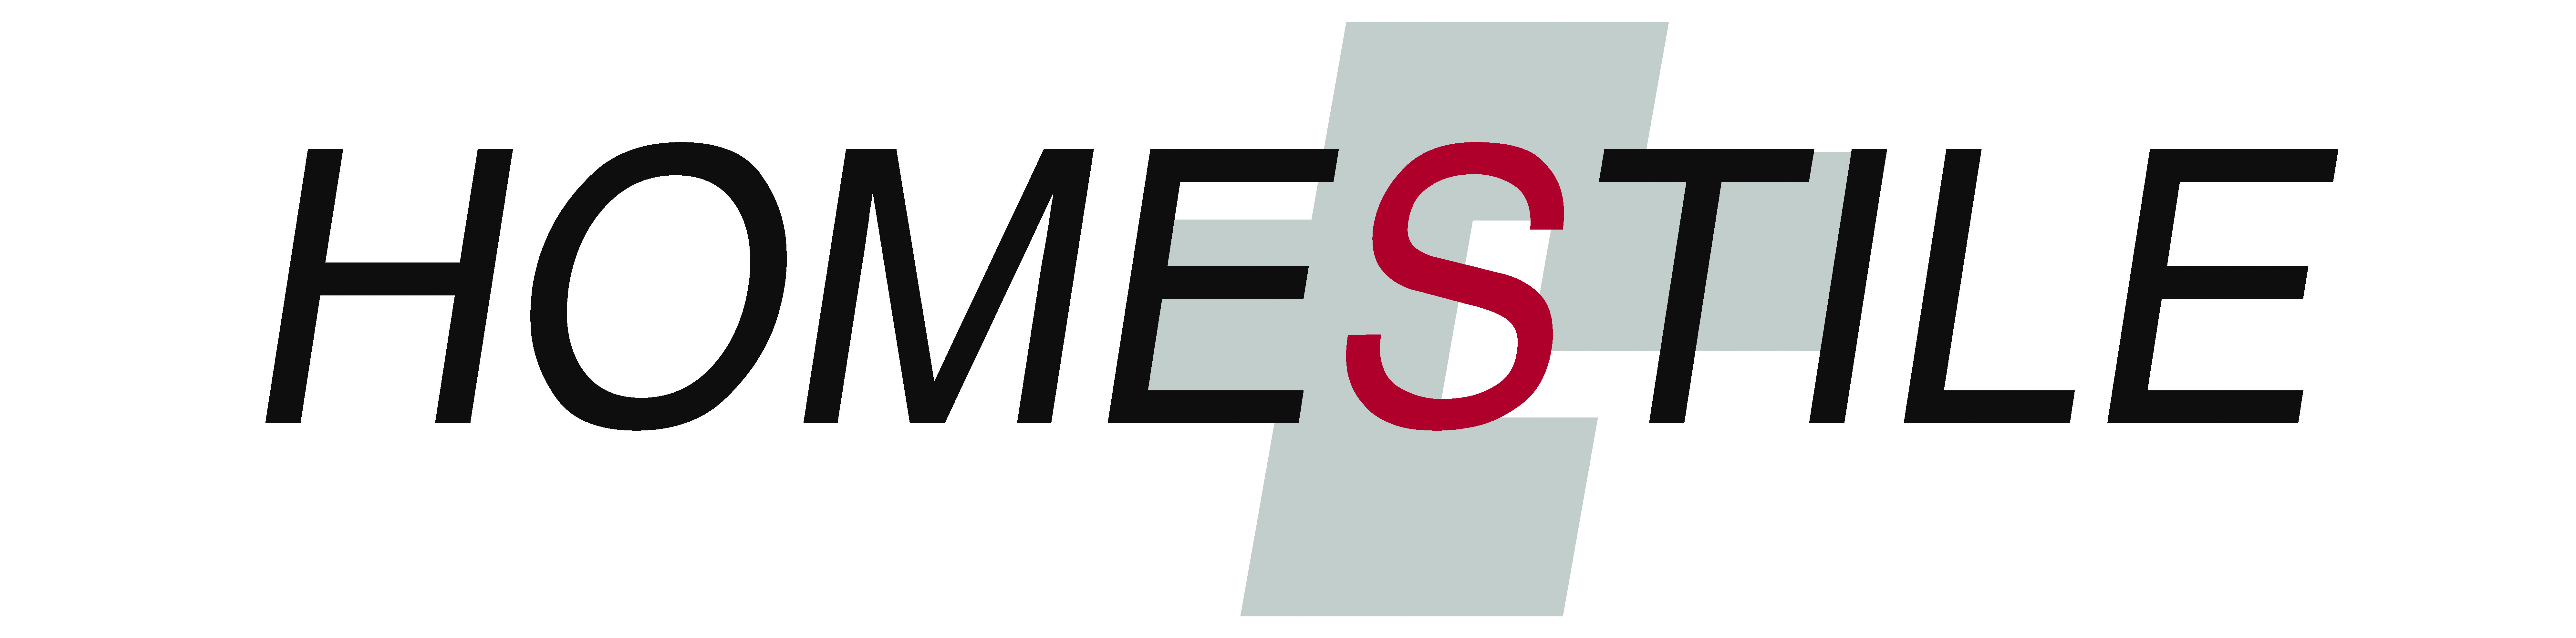 Homestile_Logo